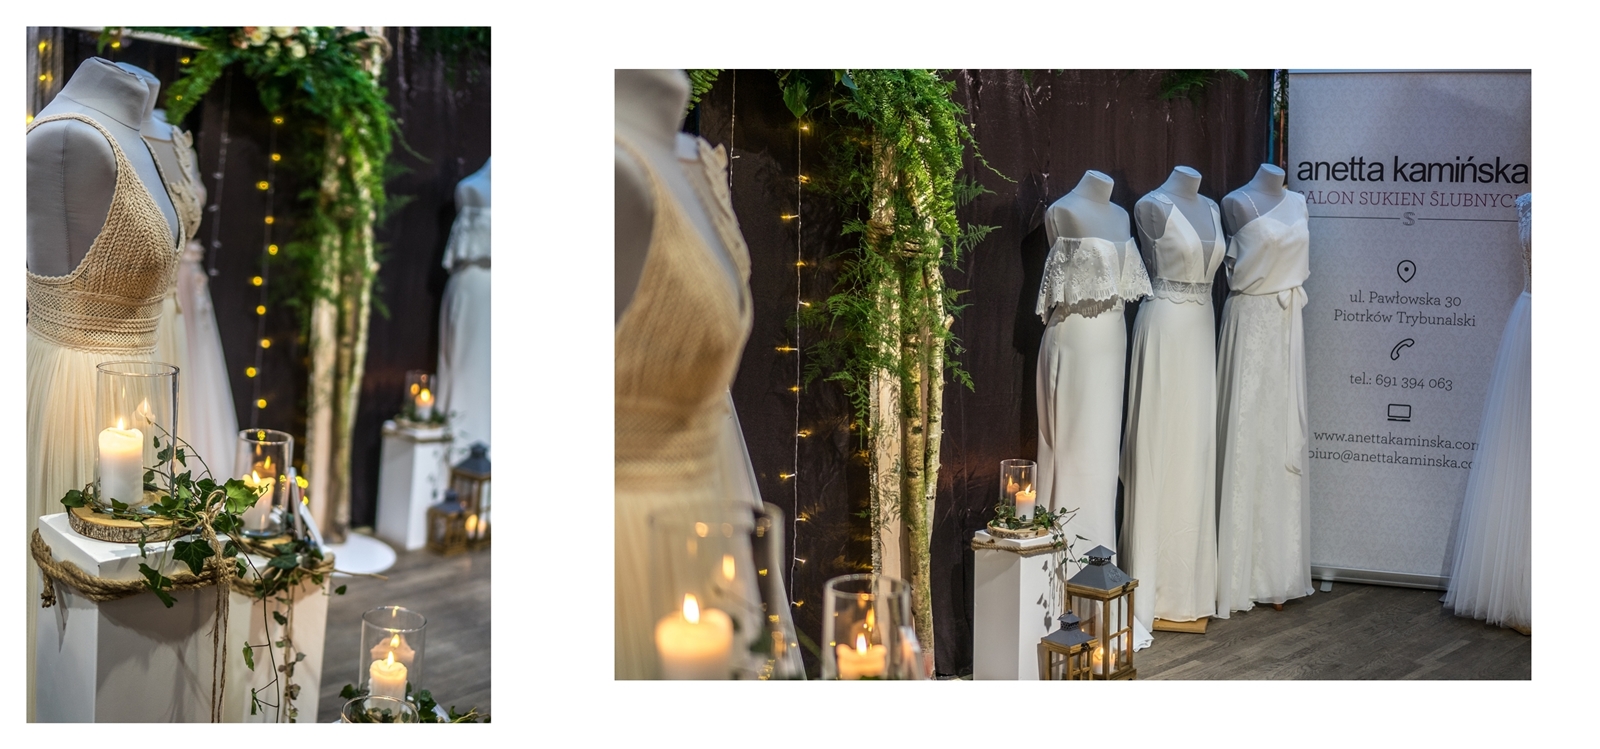 5 panna na wydaniu OFF WEDDING - Alternatywne Targi ślubne papeteria. biżuteria ślubna, dodatki ślubne, boho dekoracje , kwiaty na ślub i wesele, warszawa, łódź, romantczne, naturalne, nietypowe papeteri